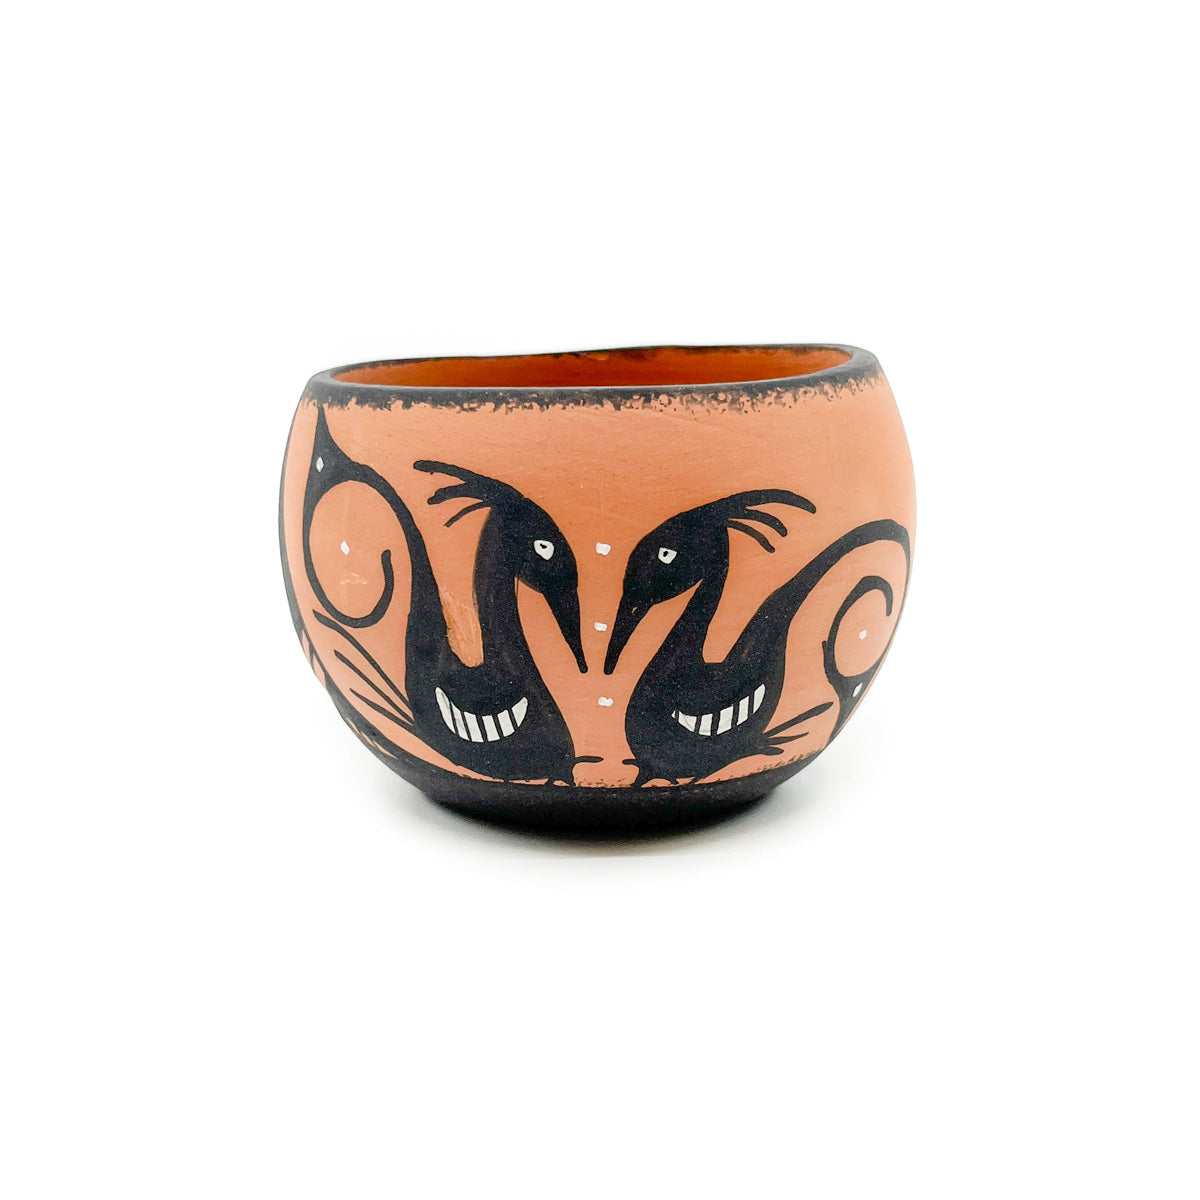 Small Zuni Bowl by Darla Westika